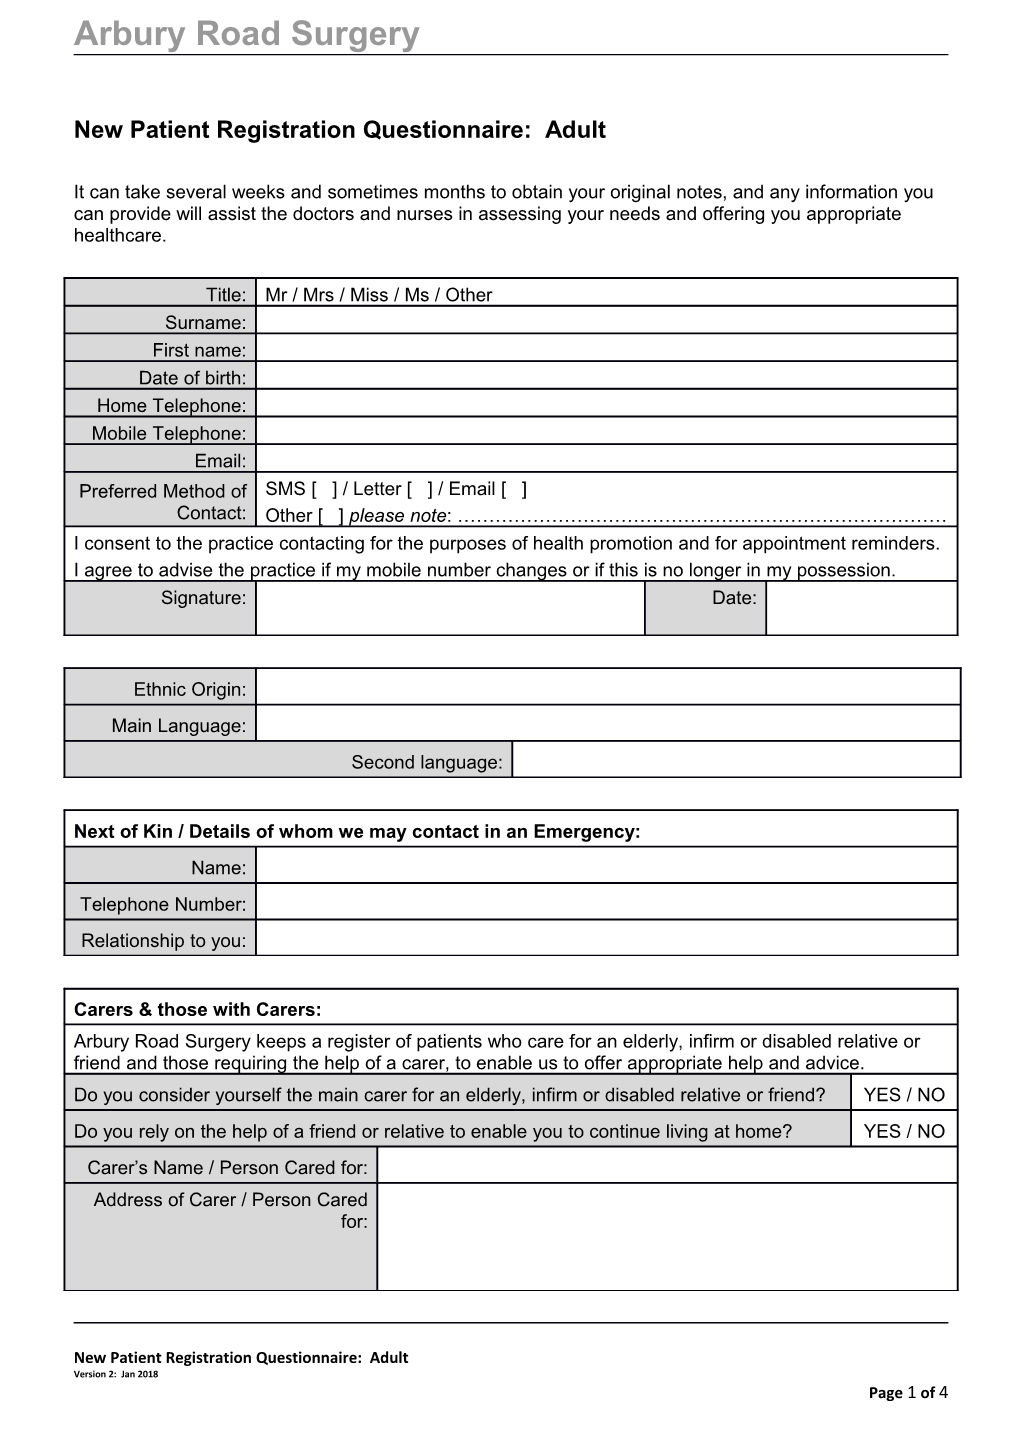 New Patient Registration Questionnaire: Adult